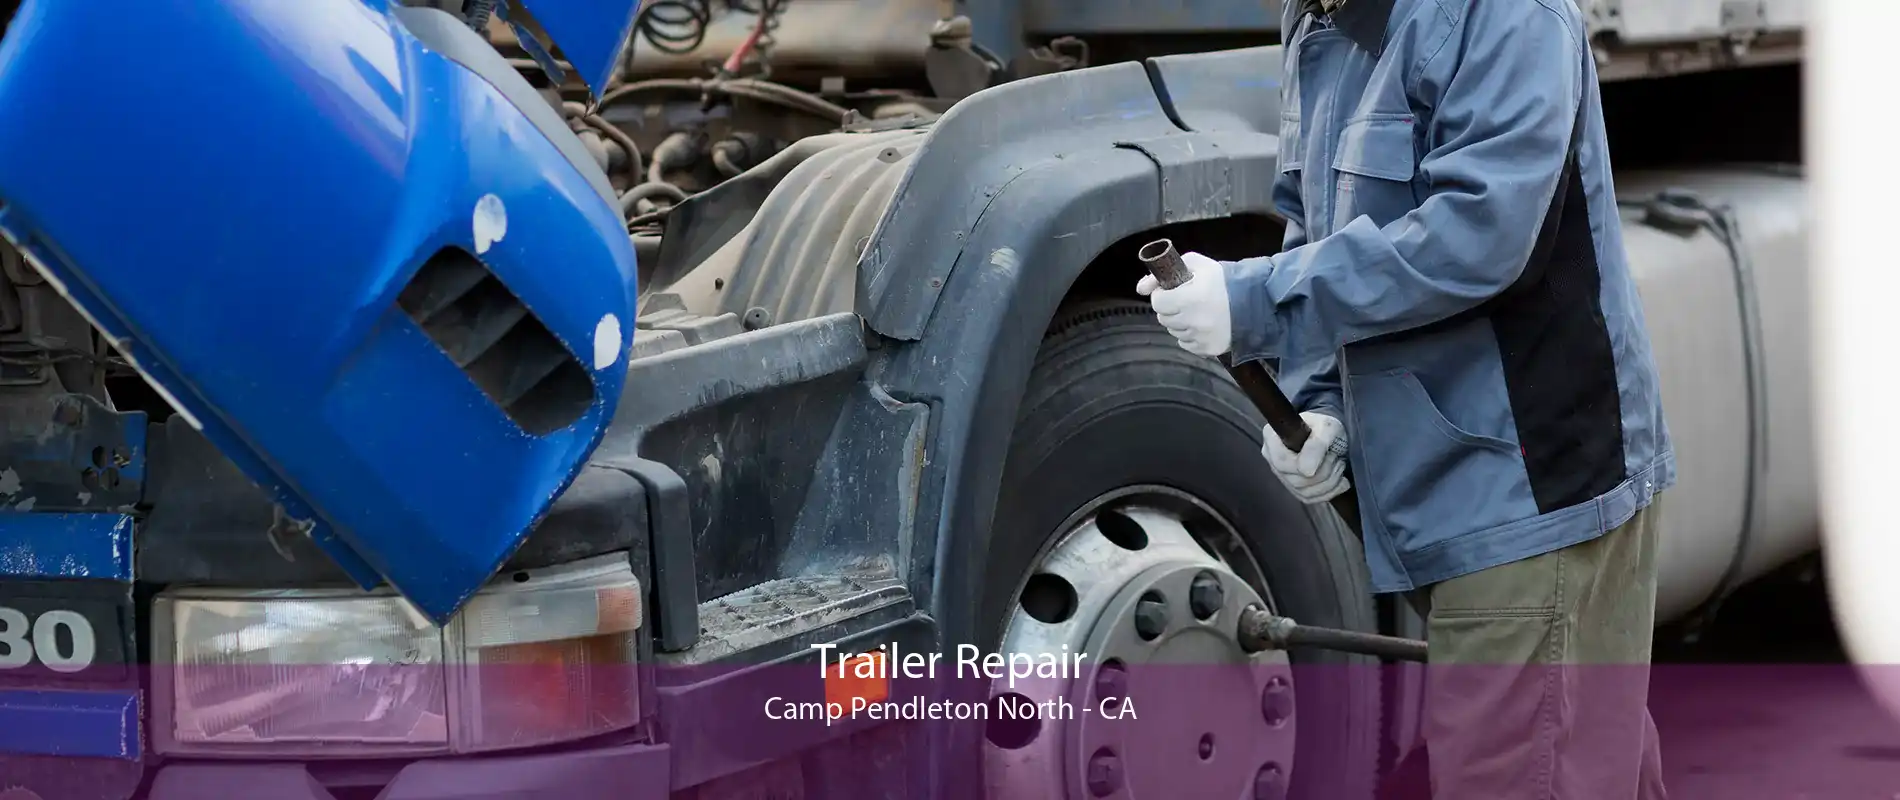 Trailer Repair Camp Pendleton North - CA